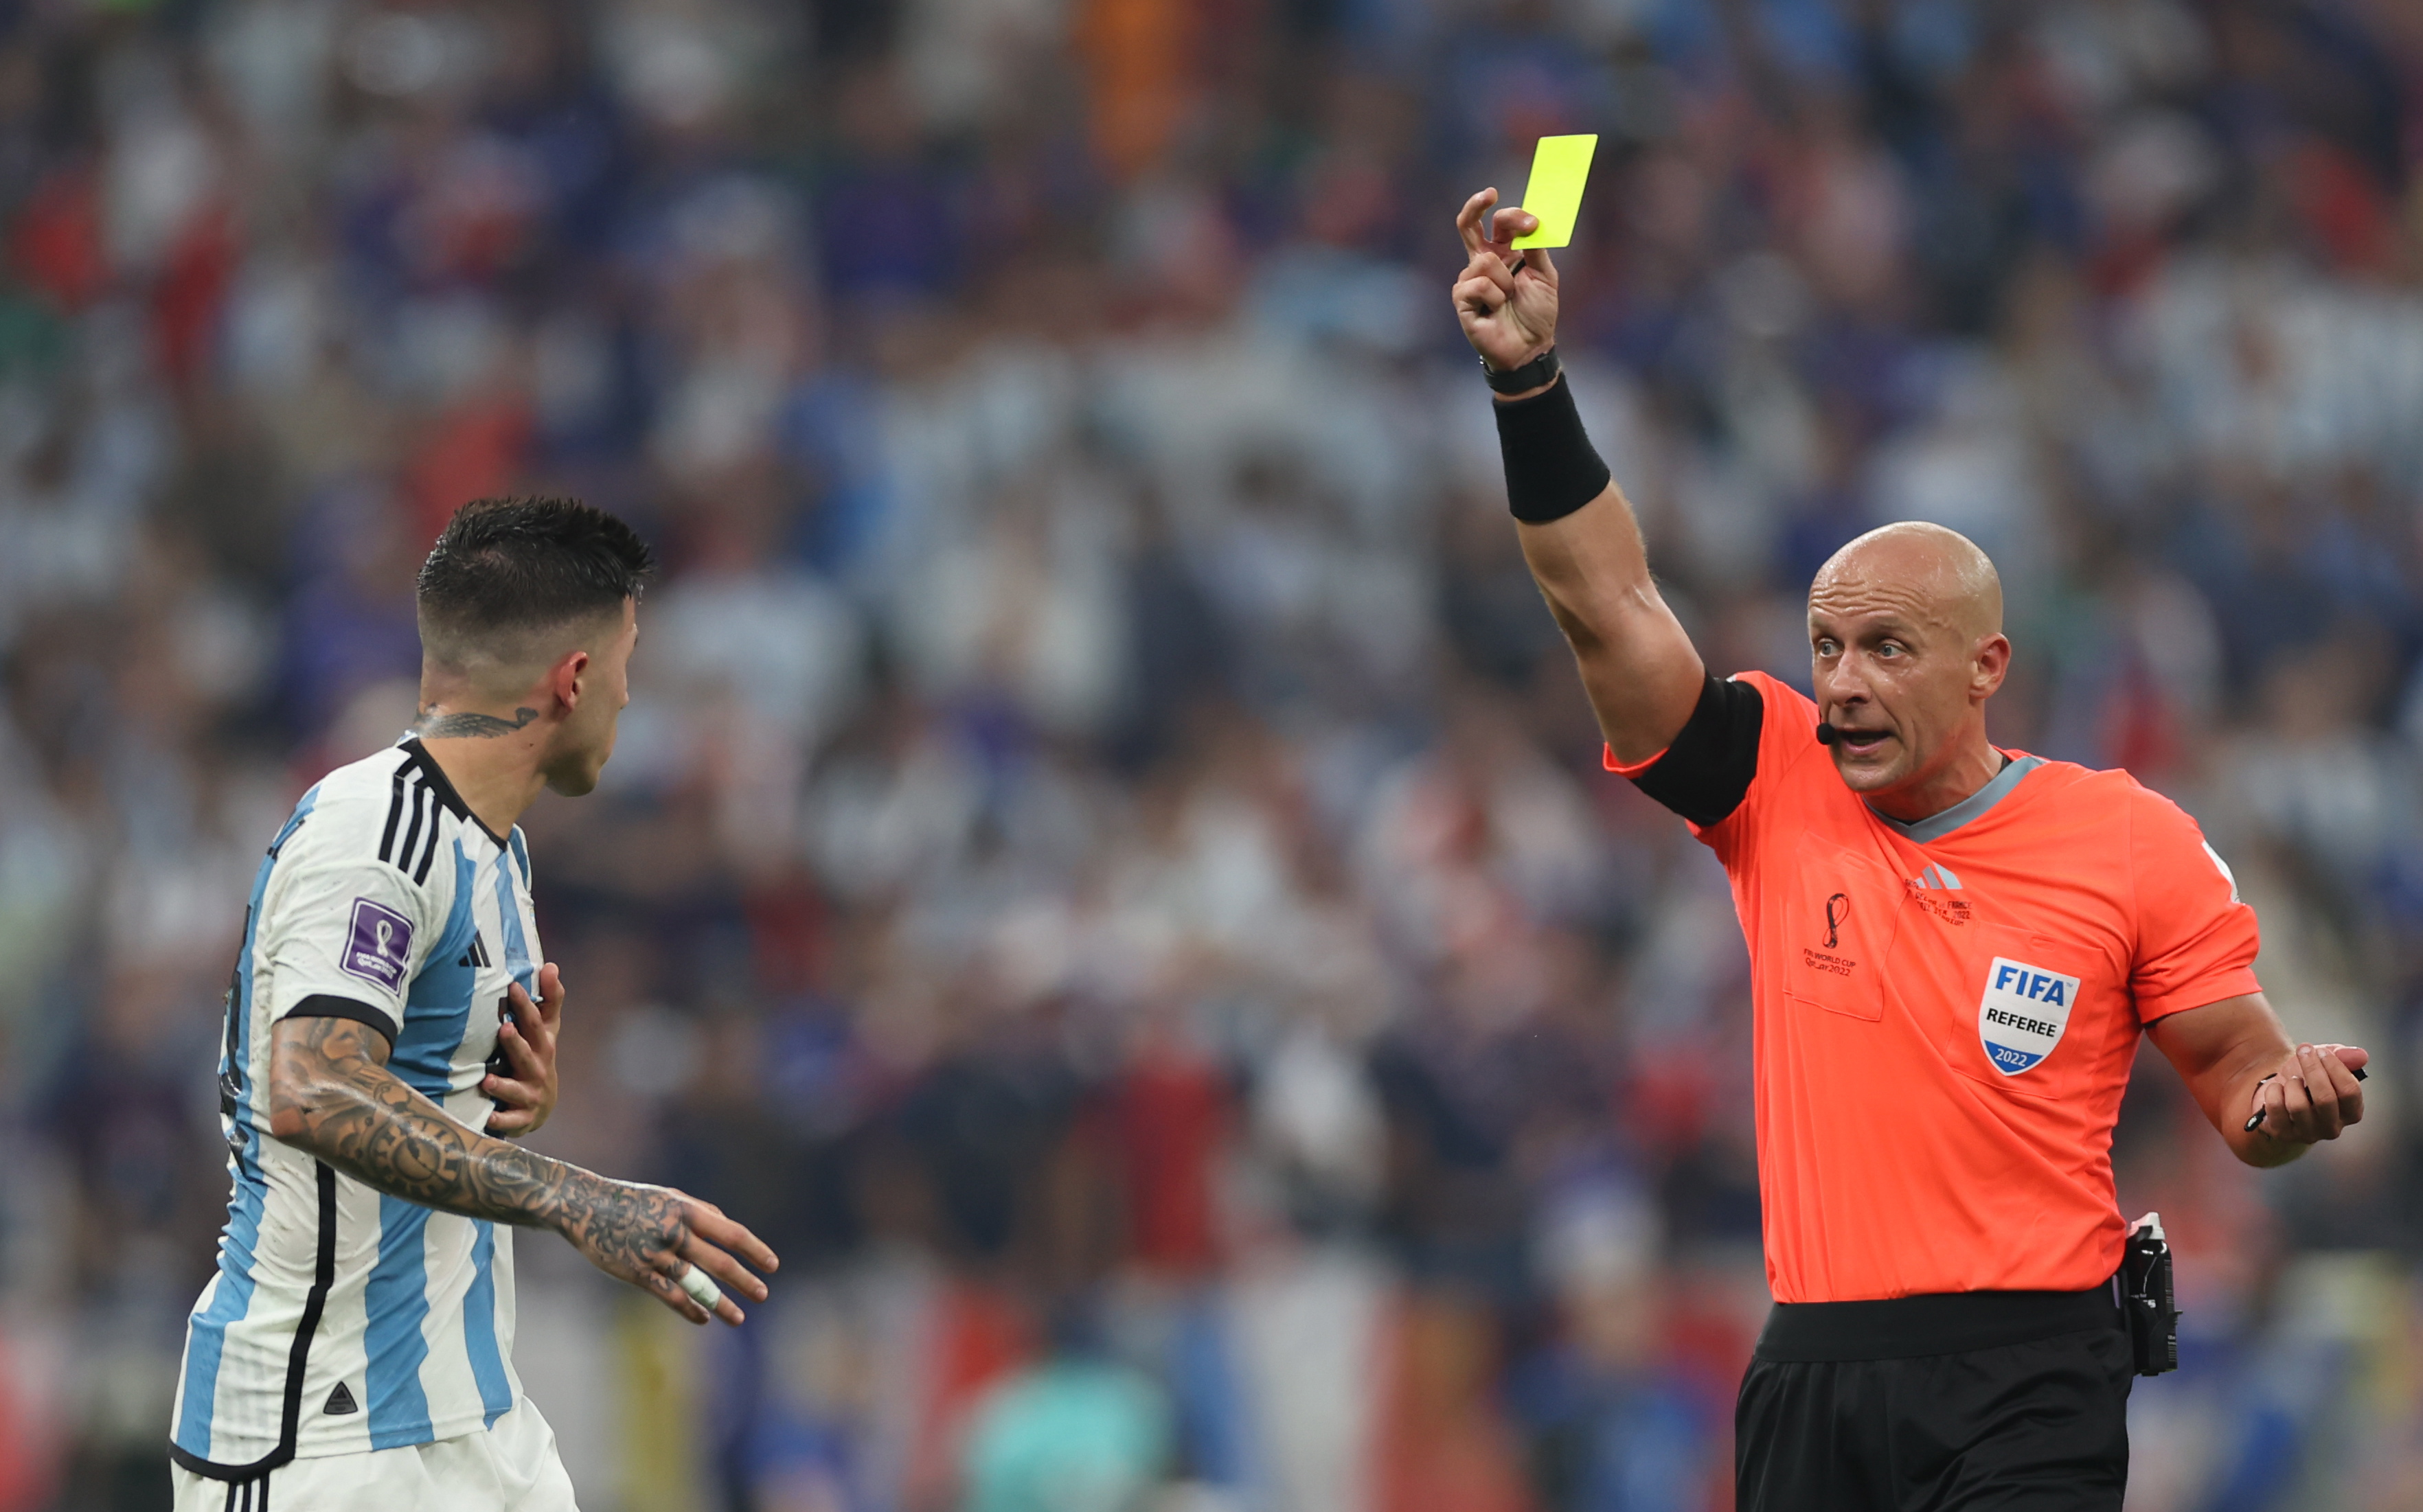 Qué tarjetas usan los árbitros en el fútbol?, Fútbol, Deportes